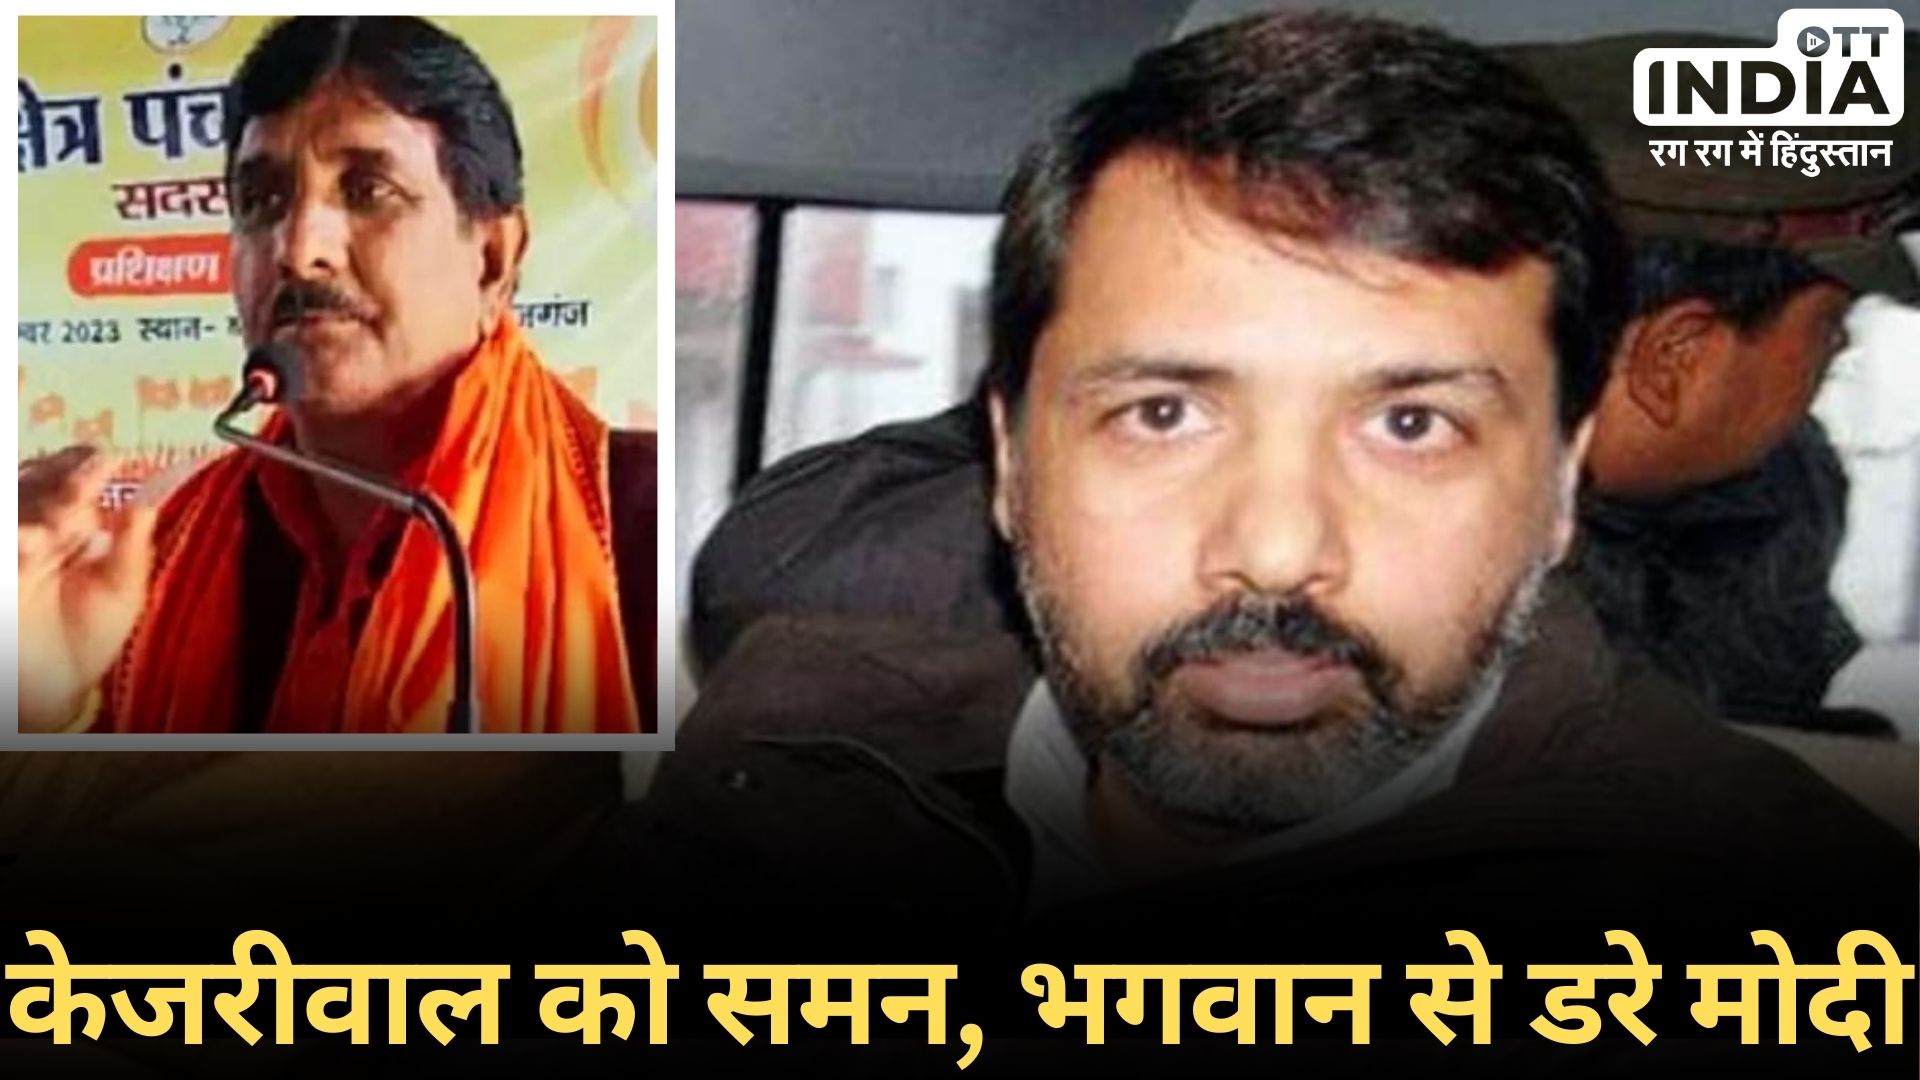 BJP Leader Shot Dead: जौनपुर में भाजपा नेता की हत्या, रंगदार धनंजय सिंह से क्या है संबंध?